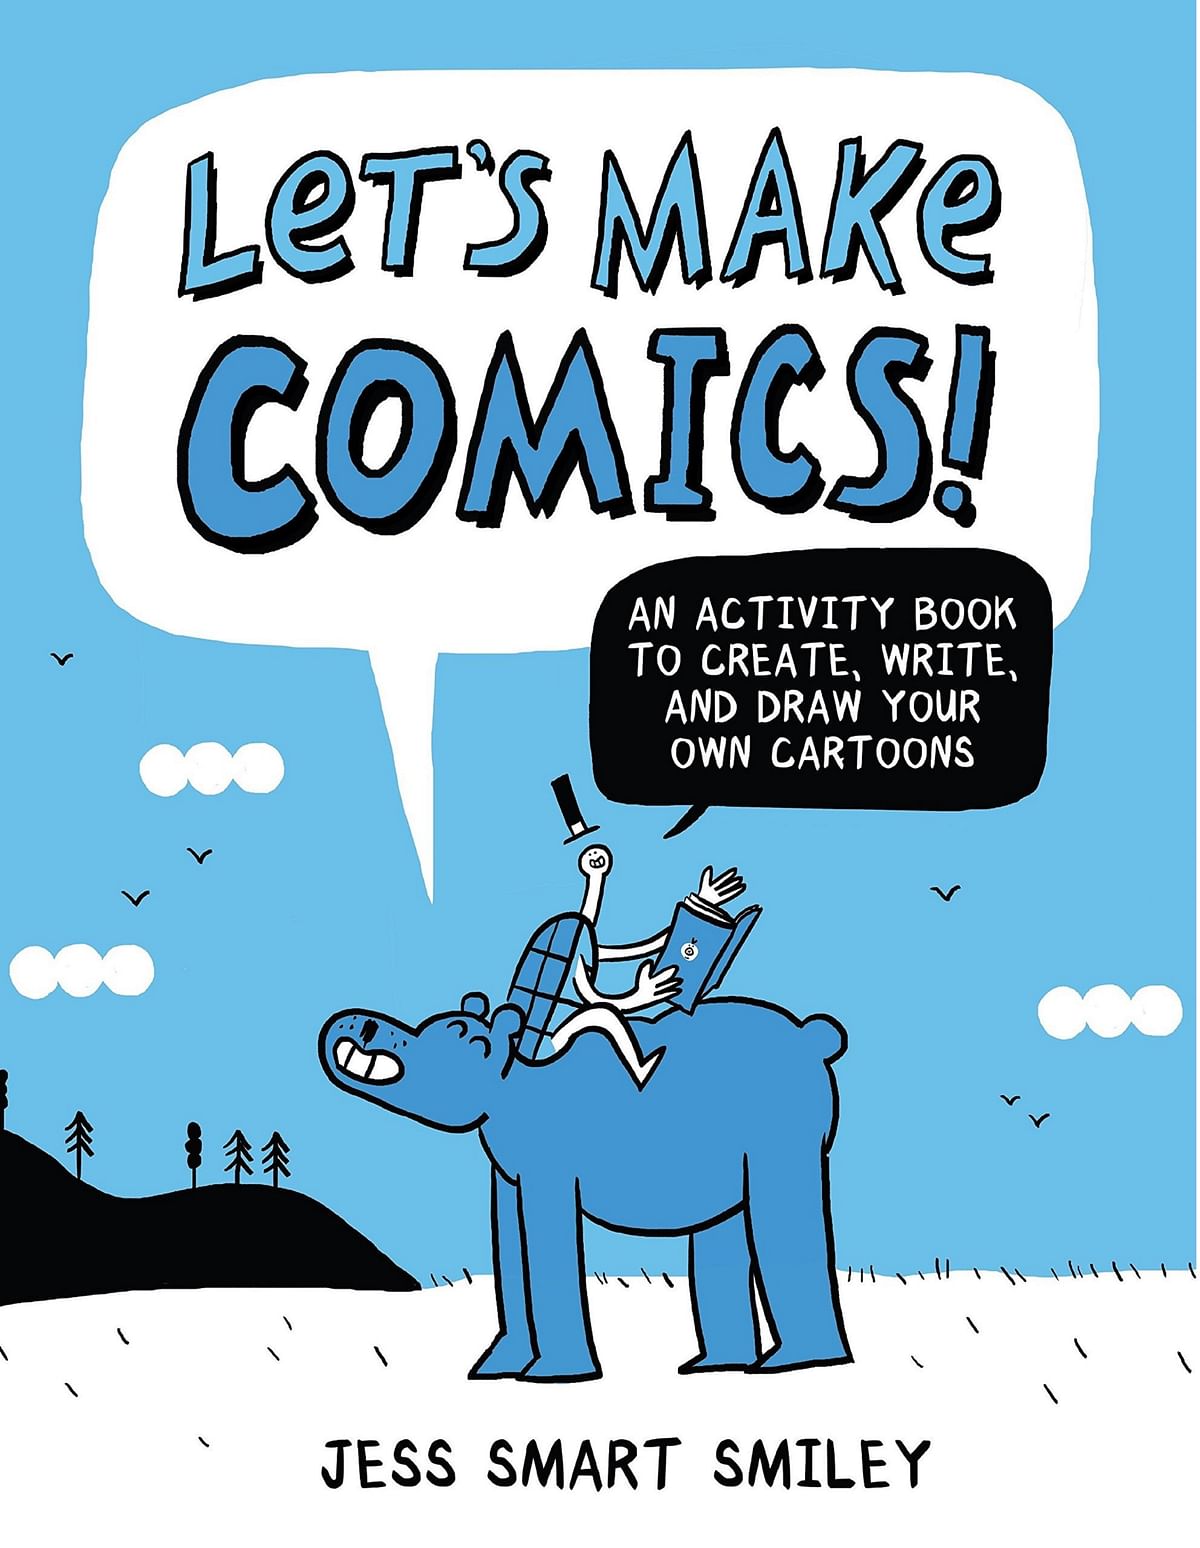 Let's Make Comics. Credit: Special Arrangement